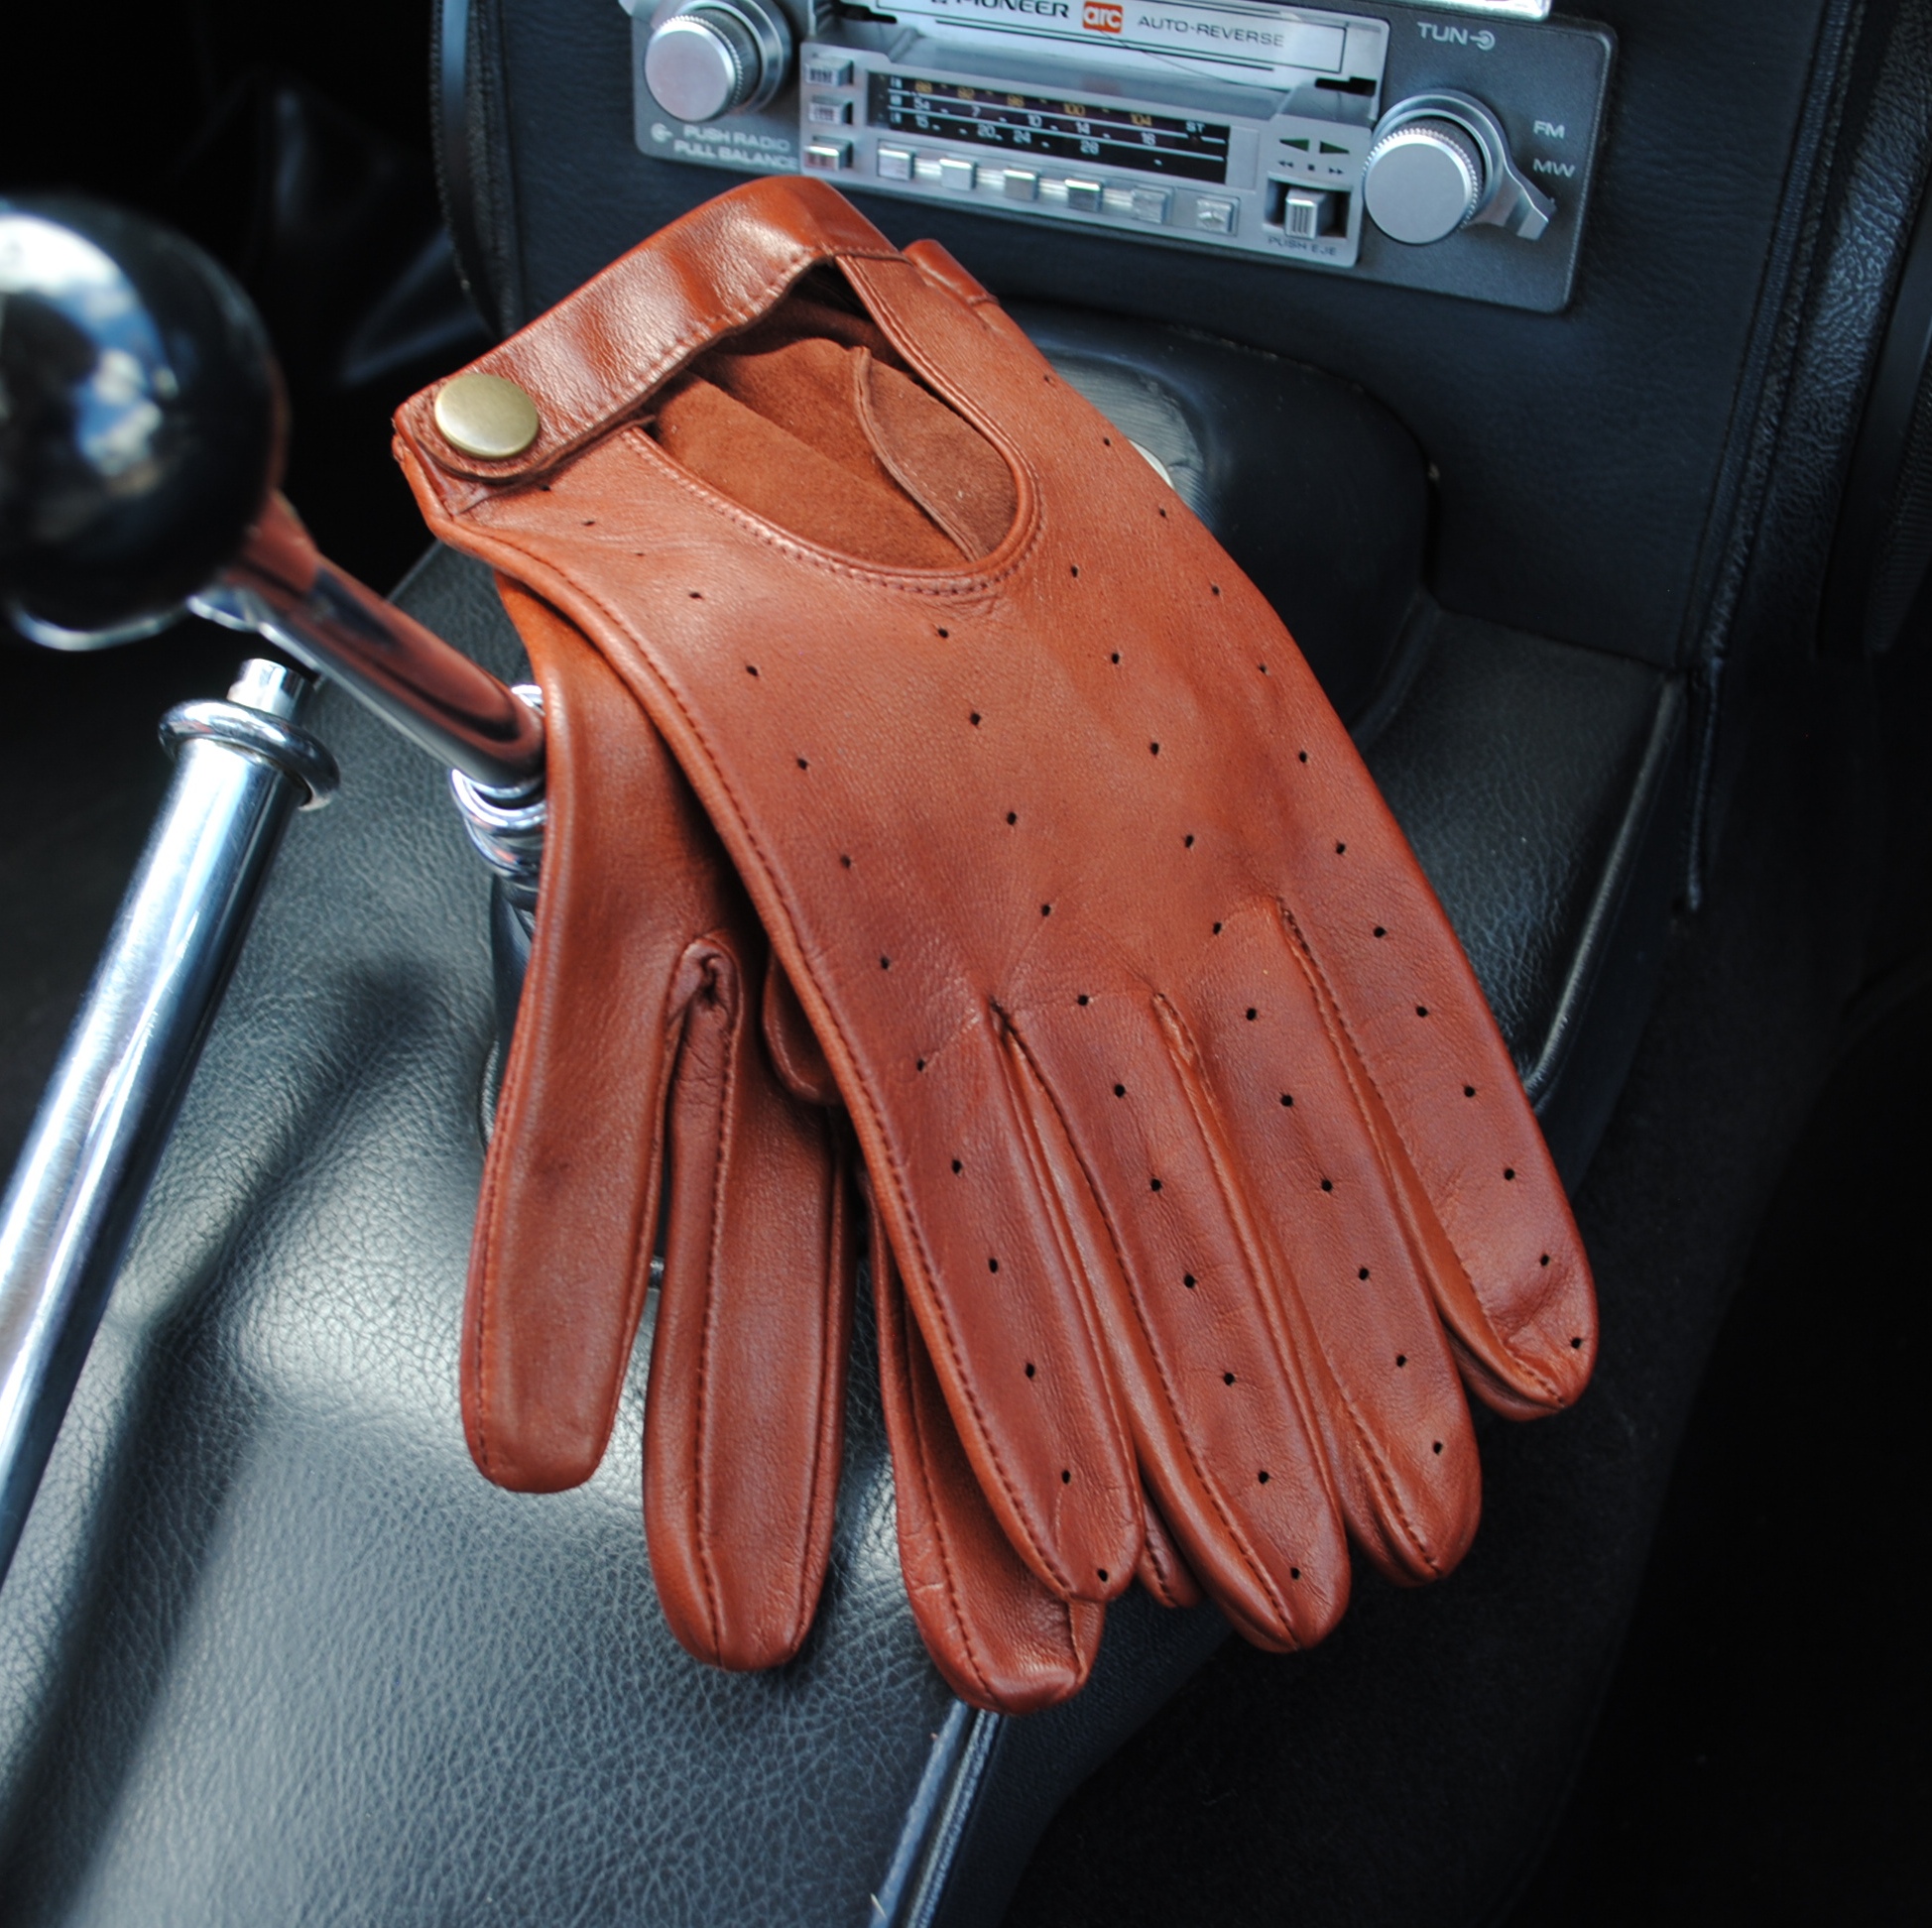 Мужские перчатки для вождения